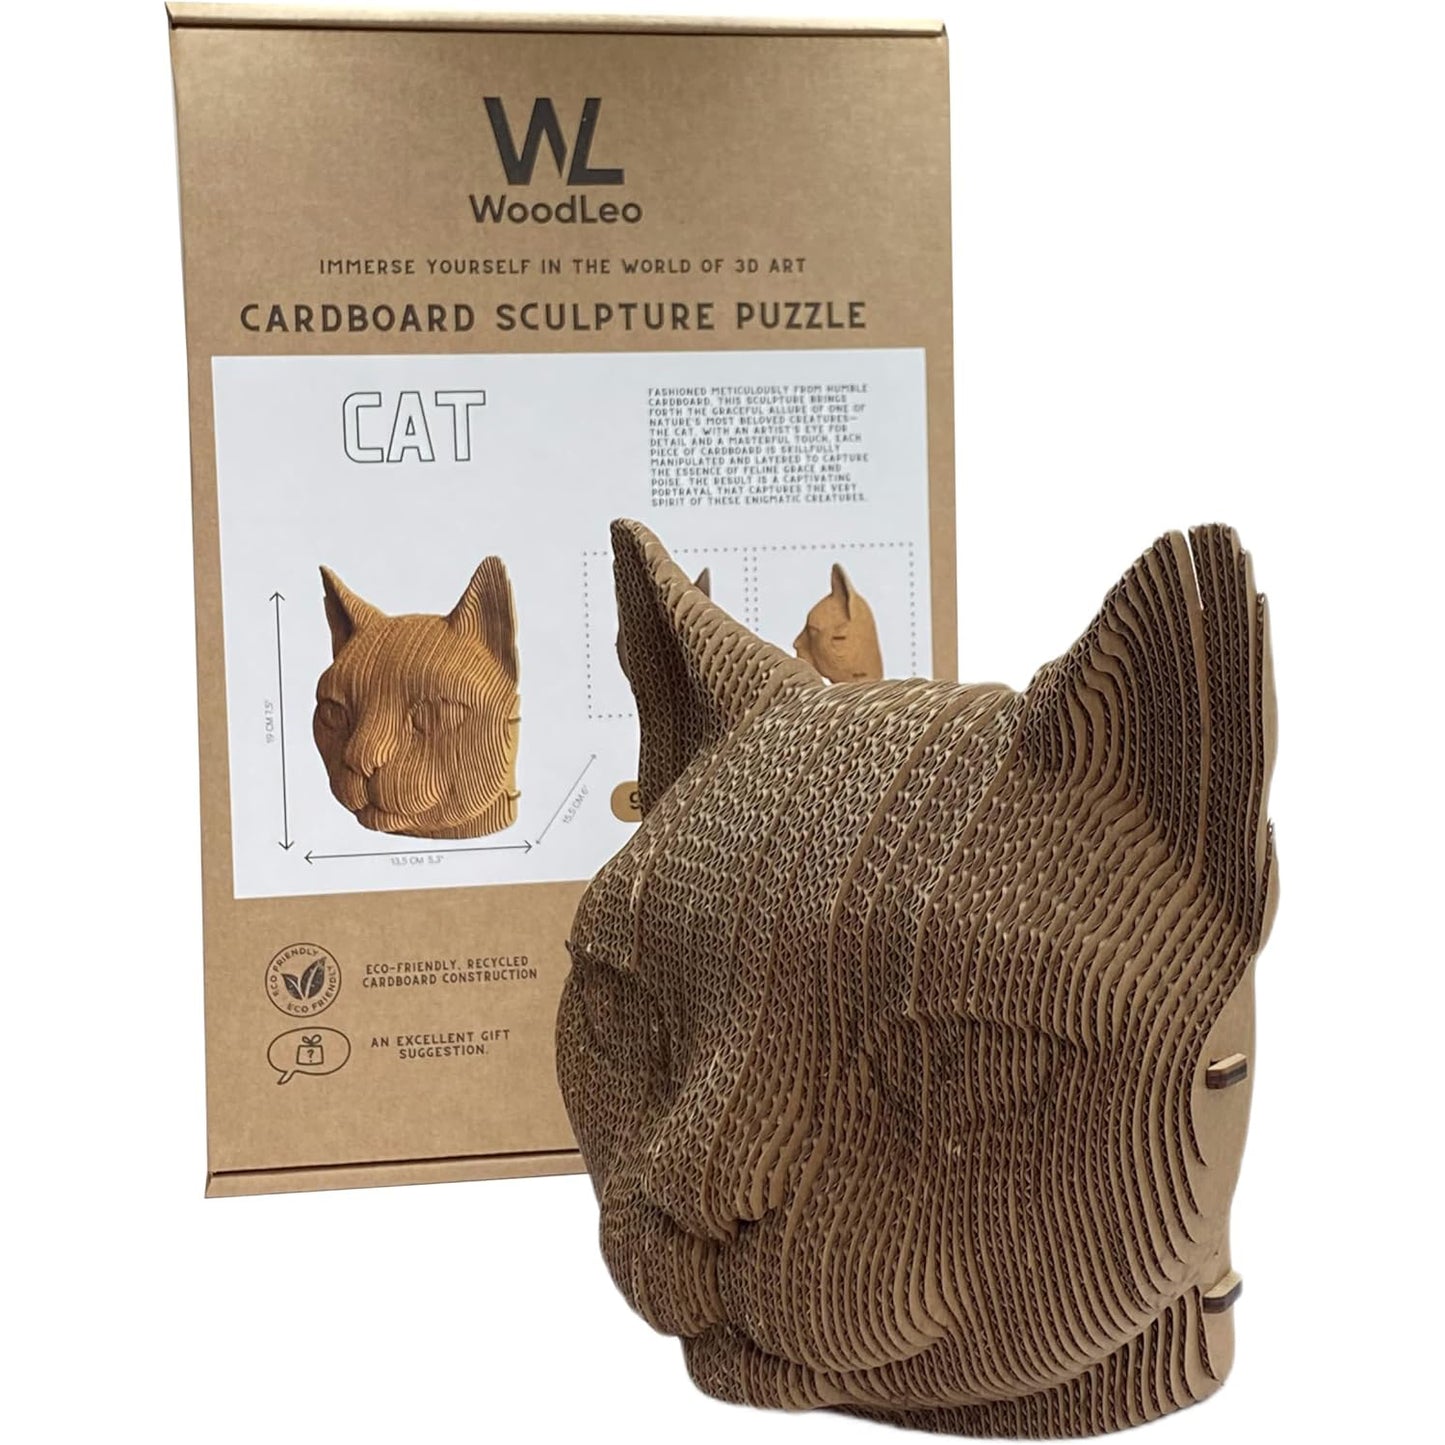 3D head sculpture made of corrugated cardboard - Cat